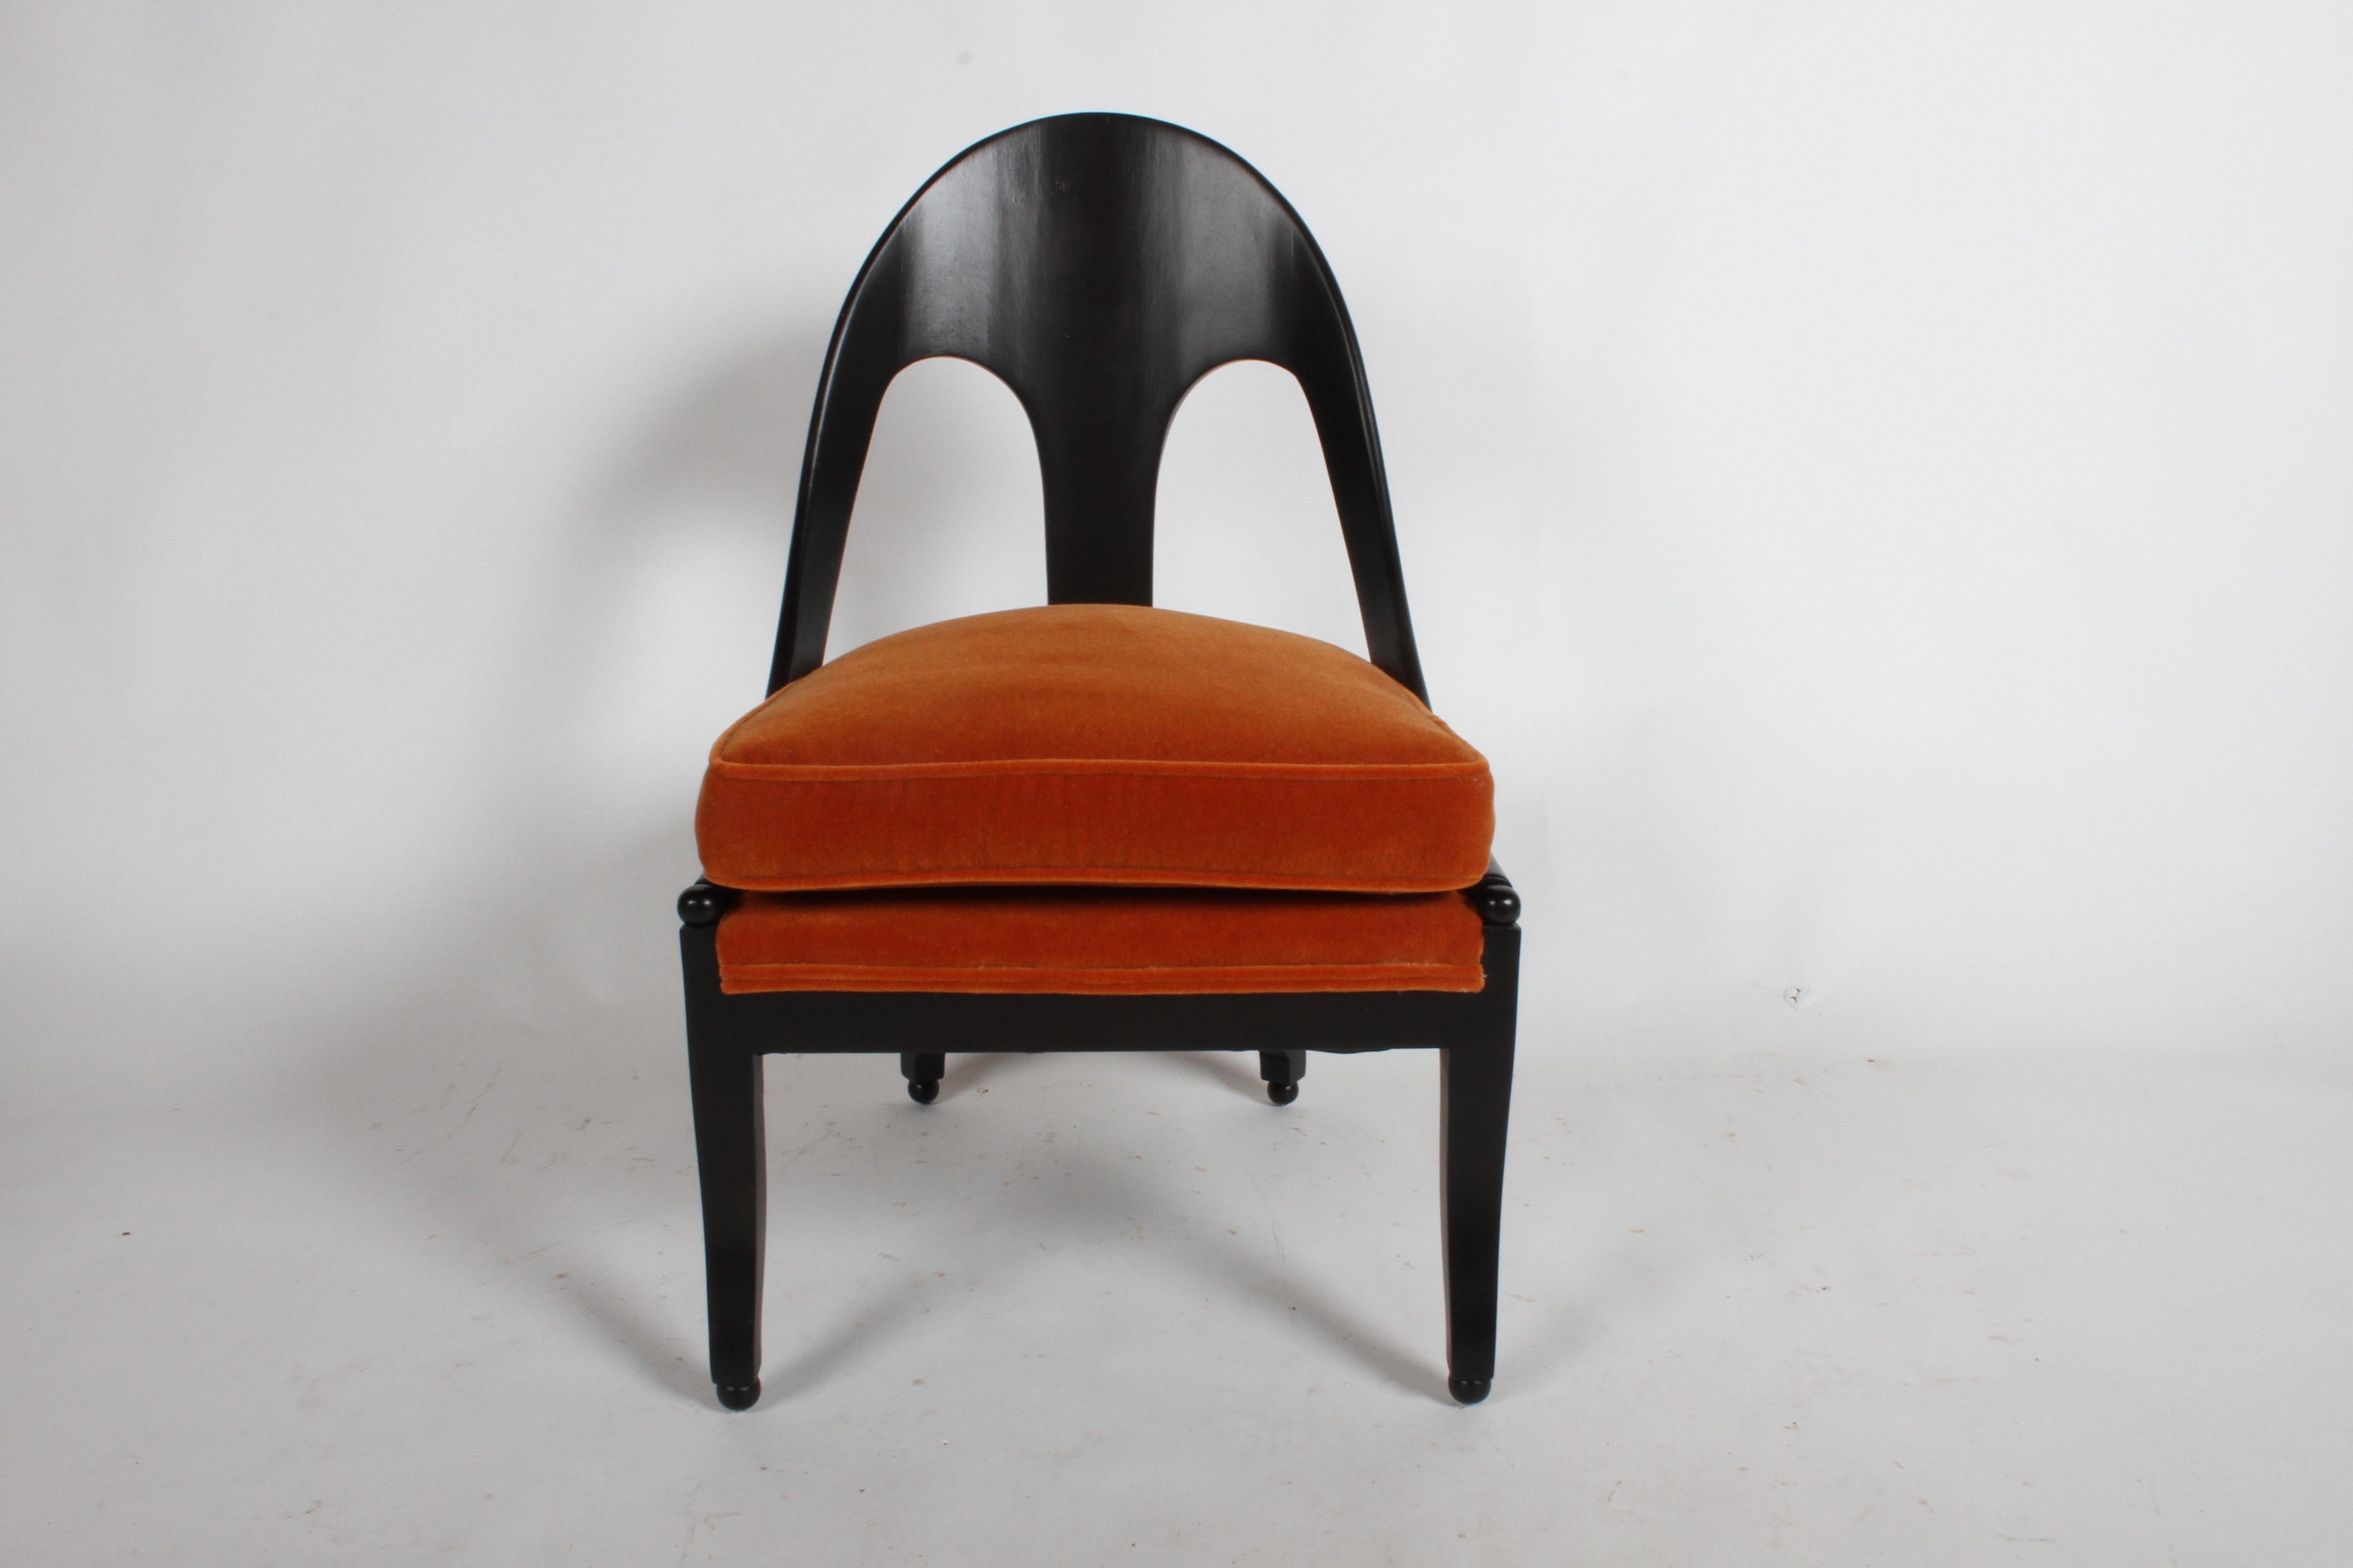 Michael Taylor Paar klassische neoklassische Sessel mit Löffelrücken. Neu lackiert mit Ebenholzbeize und gebranntem orangefarbenem Mohair. Nur ein Stuhl wurde neu gepolstert, für den zweiten Stuhl ist möglicherweise nicht genug Mohair vorhanden.